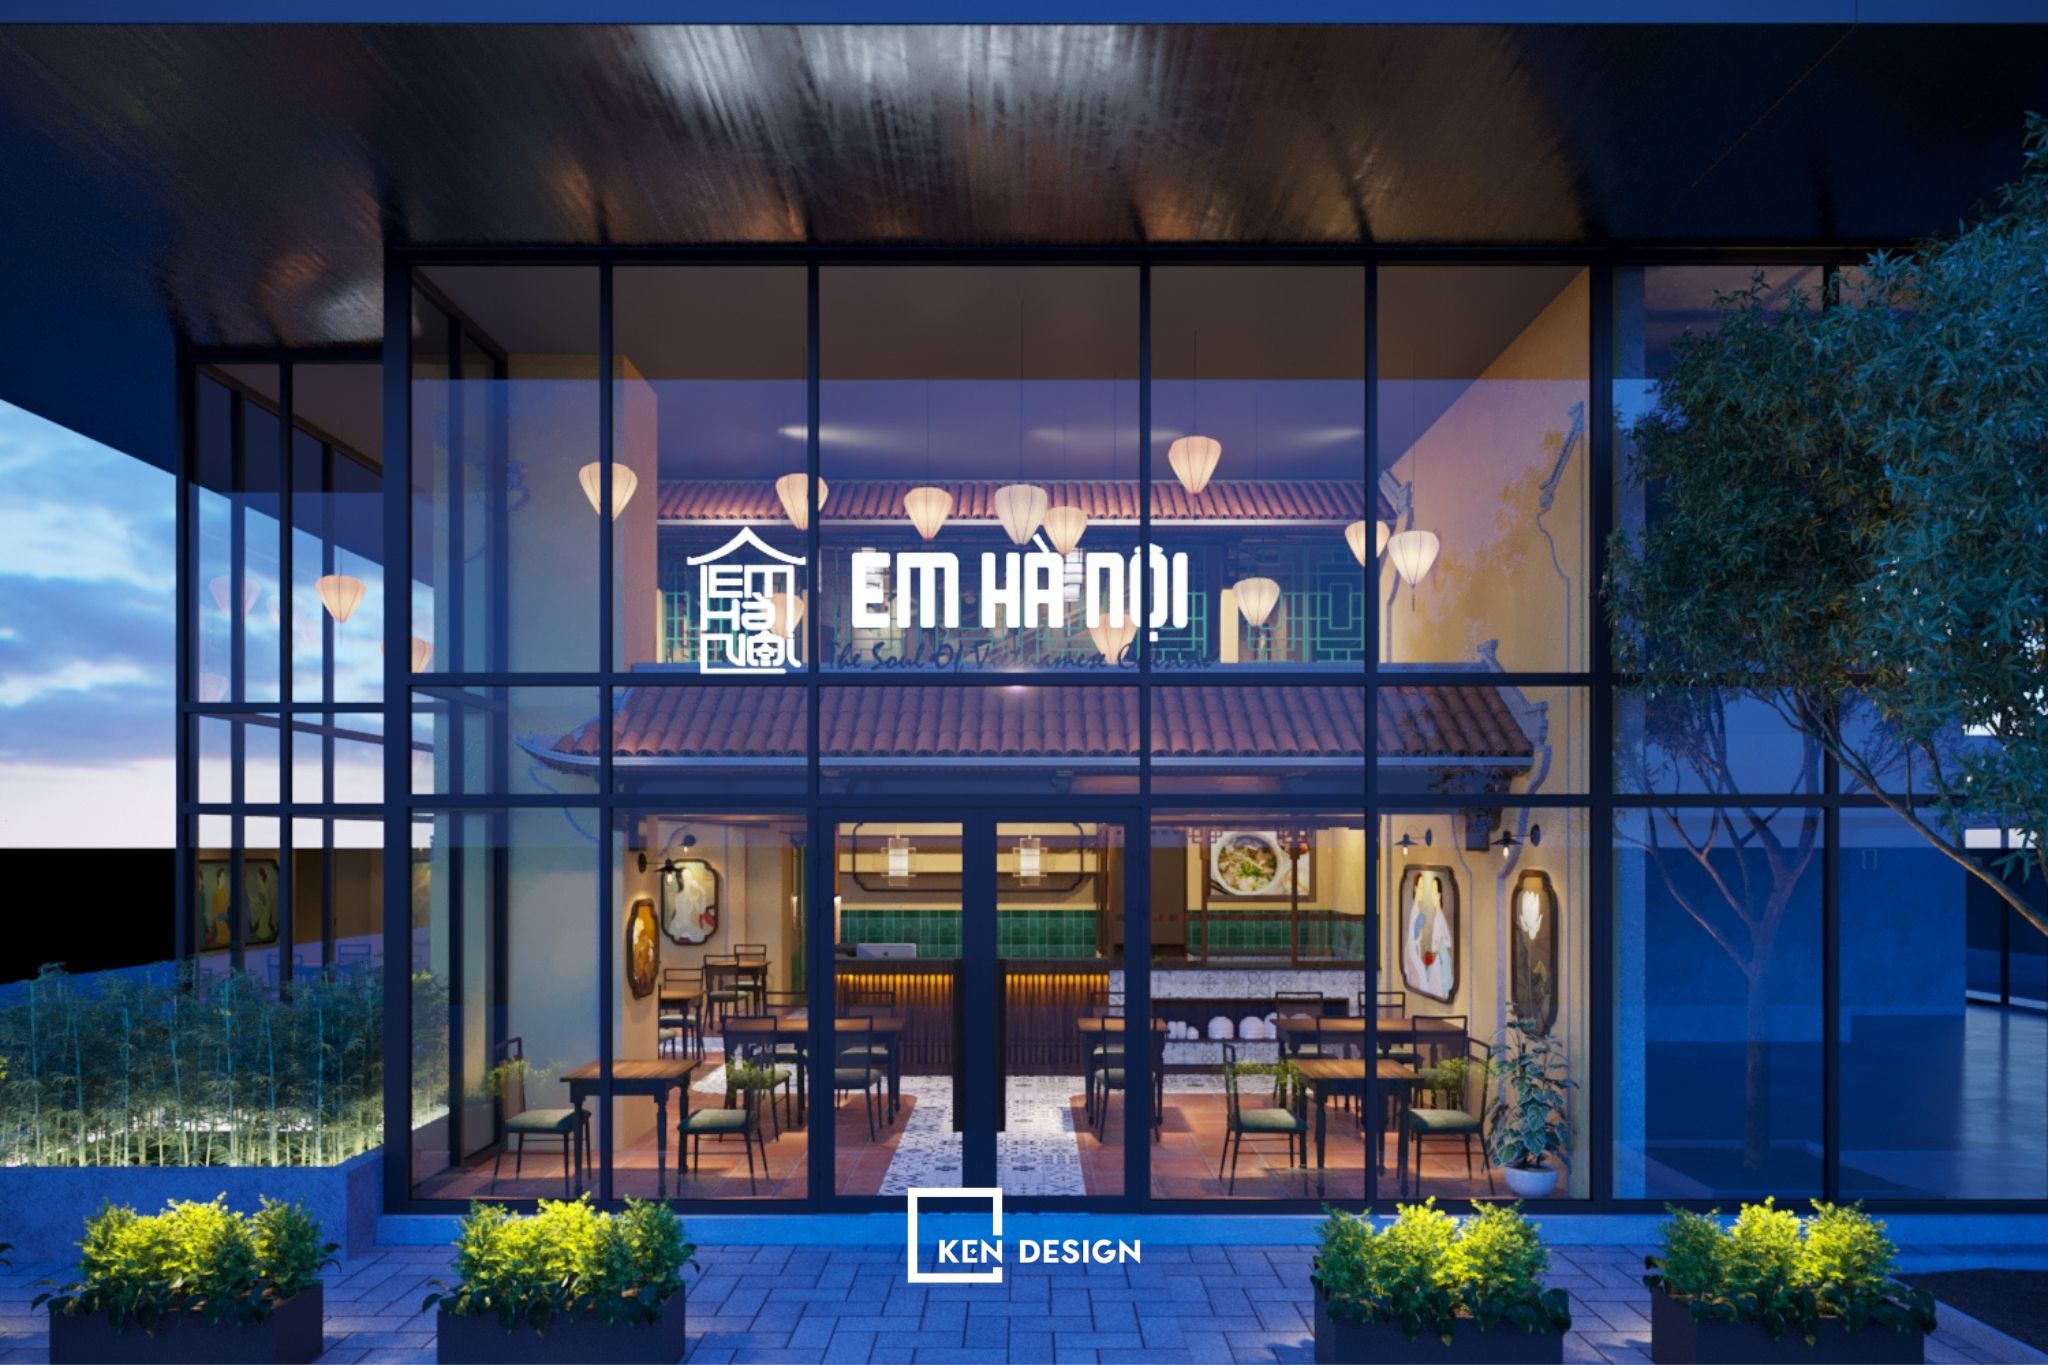 Thiết kế nhà hàng Em Hà Nội 2 - Vẻ đẹp cổ kính ẩn trong không gian hiện đại